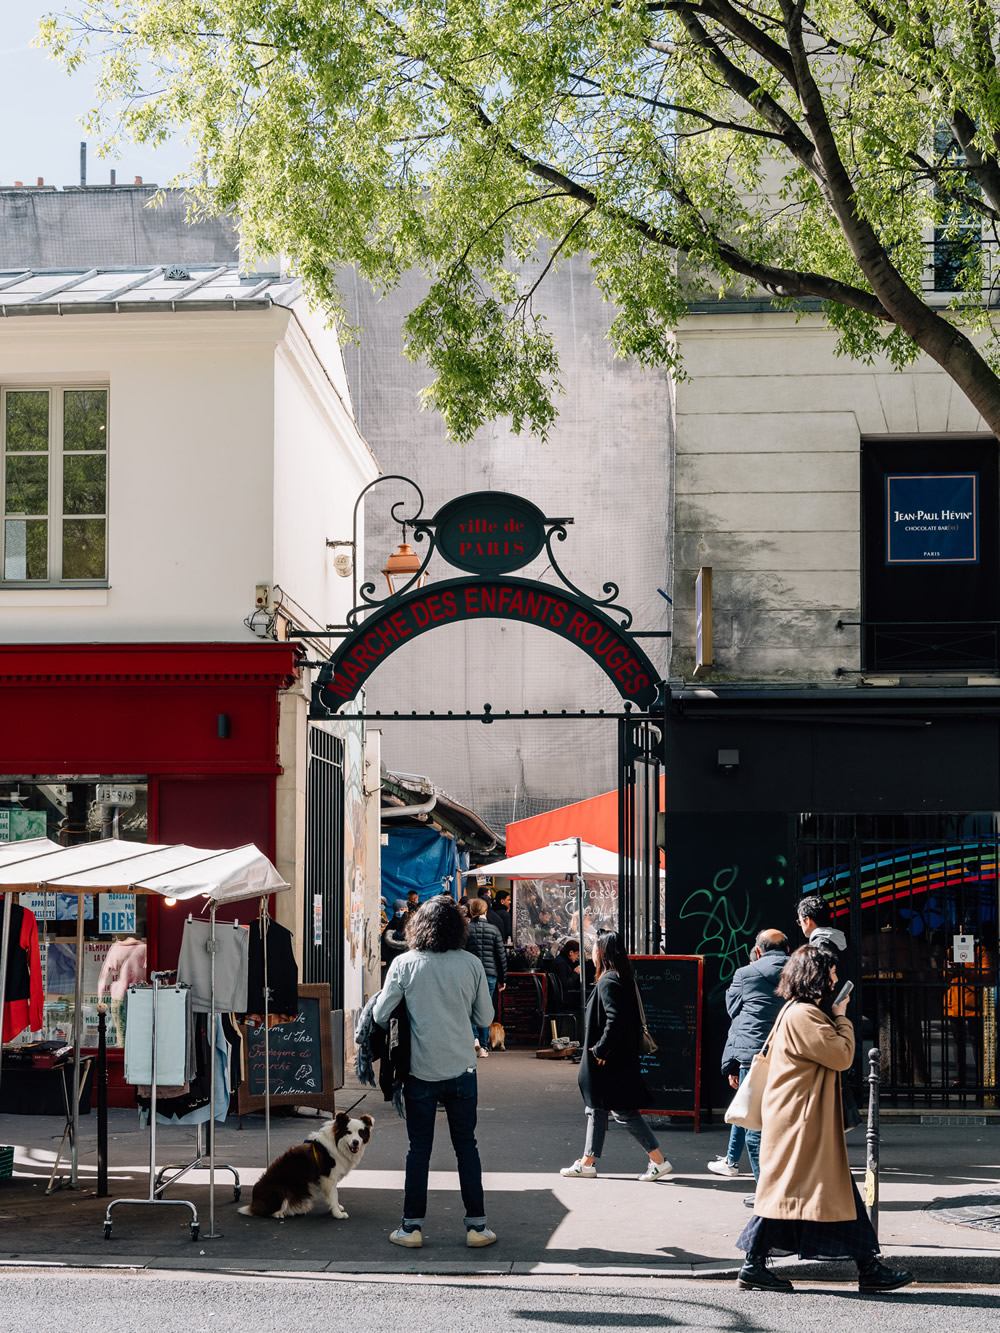 Bekende overdekte markten in Parijs